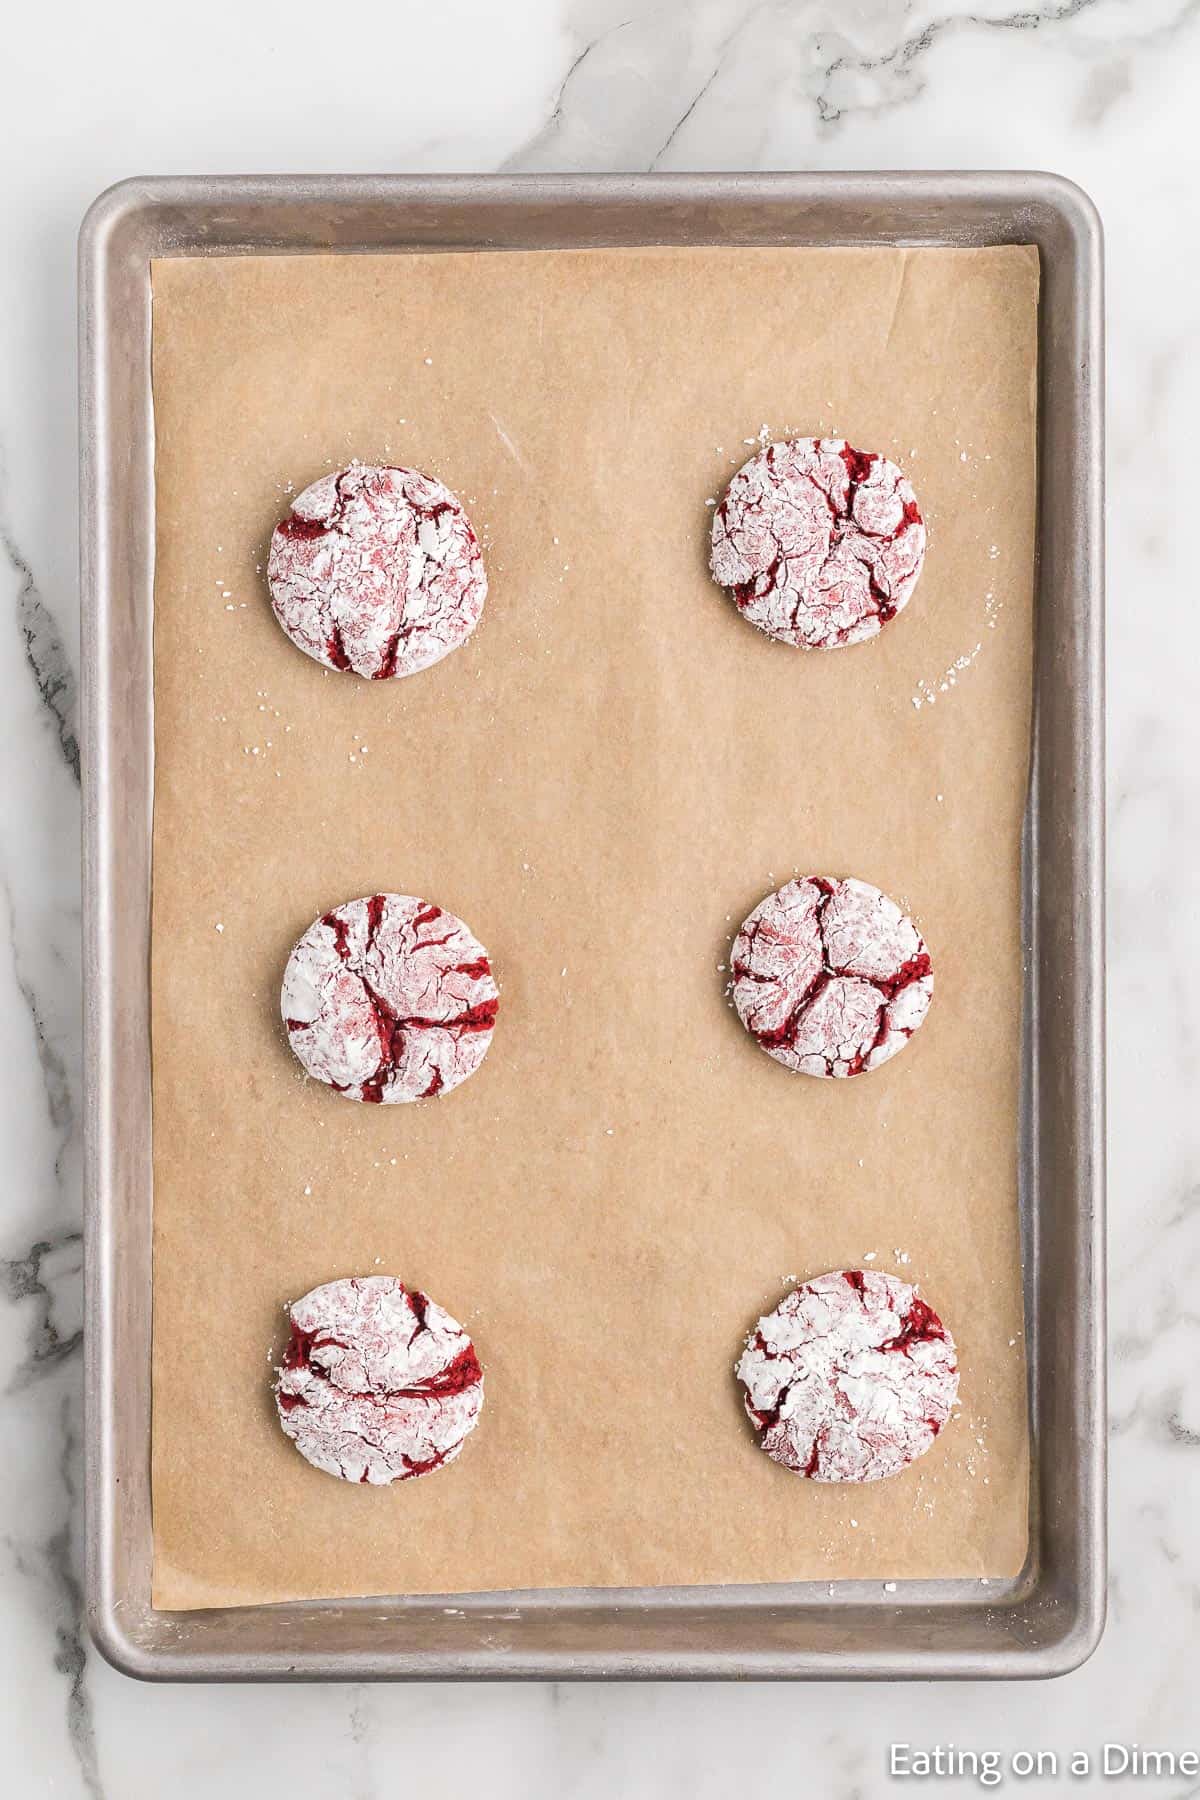 Red Velvet Cookie dough on baking sheet